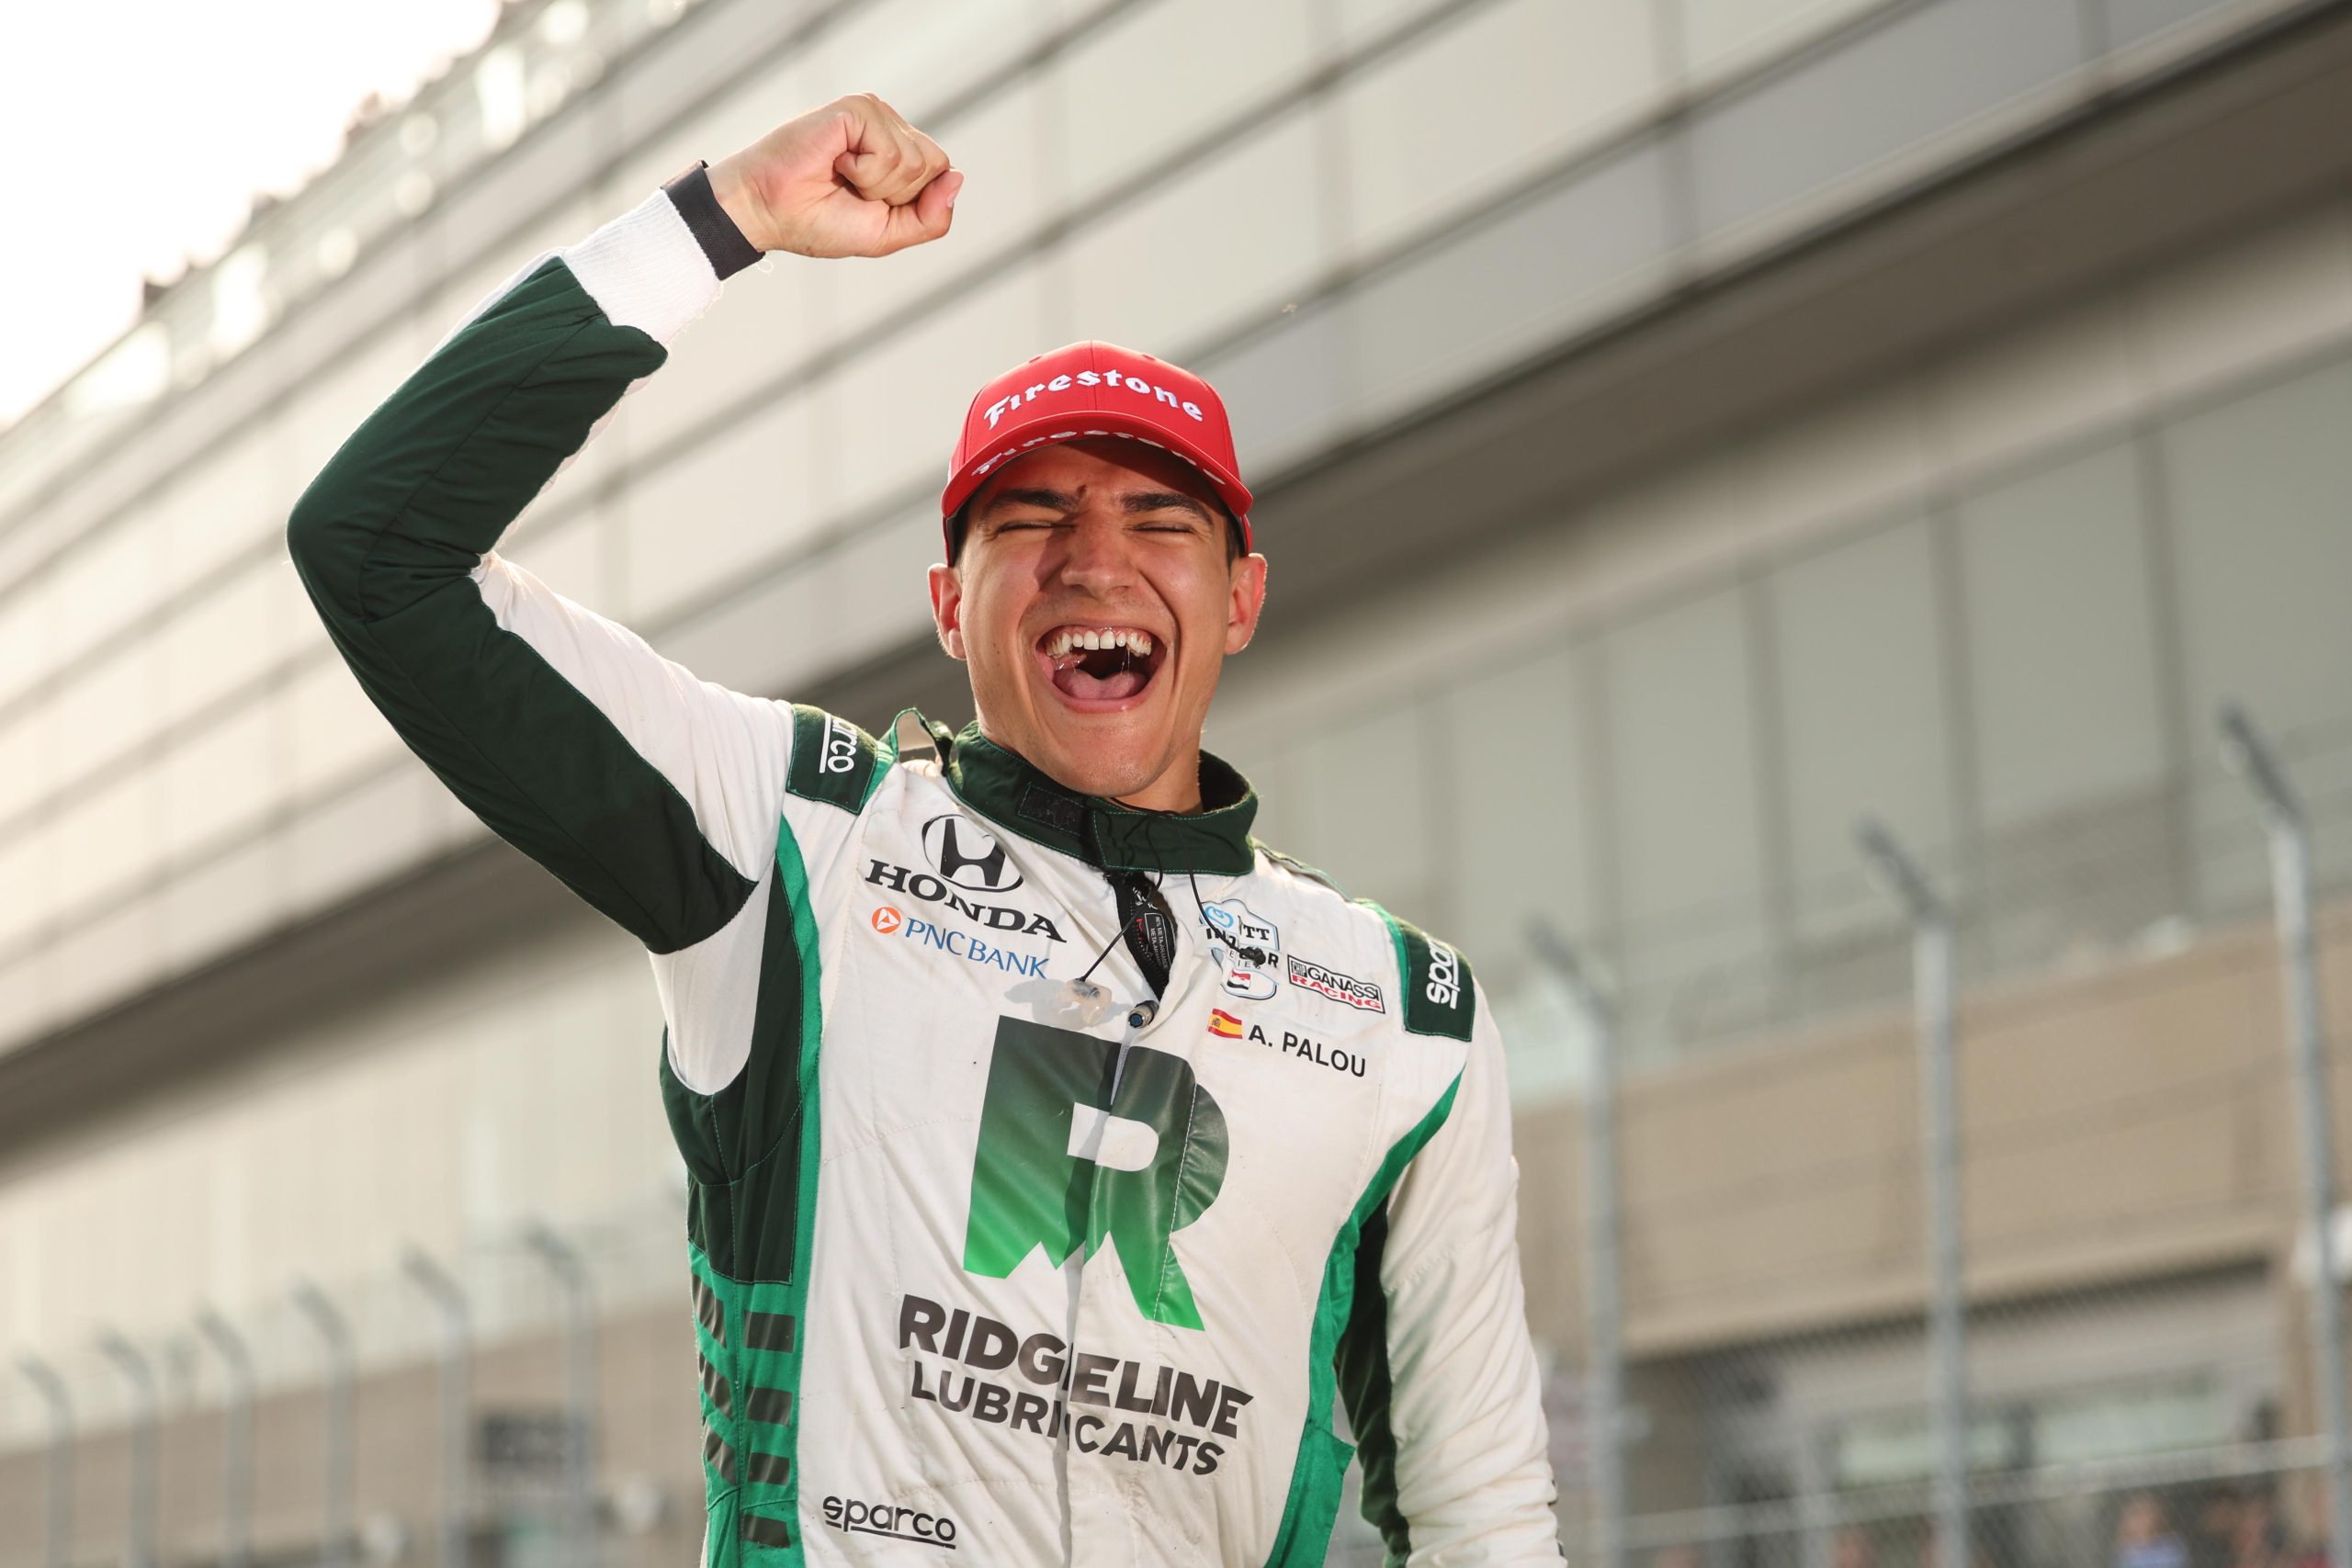 Alex Palou celebrates his victory at the Detroit Grand Prix (Chris Owens/Penske Entertainment)